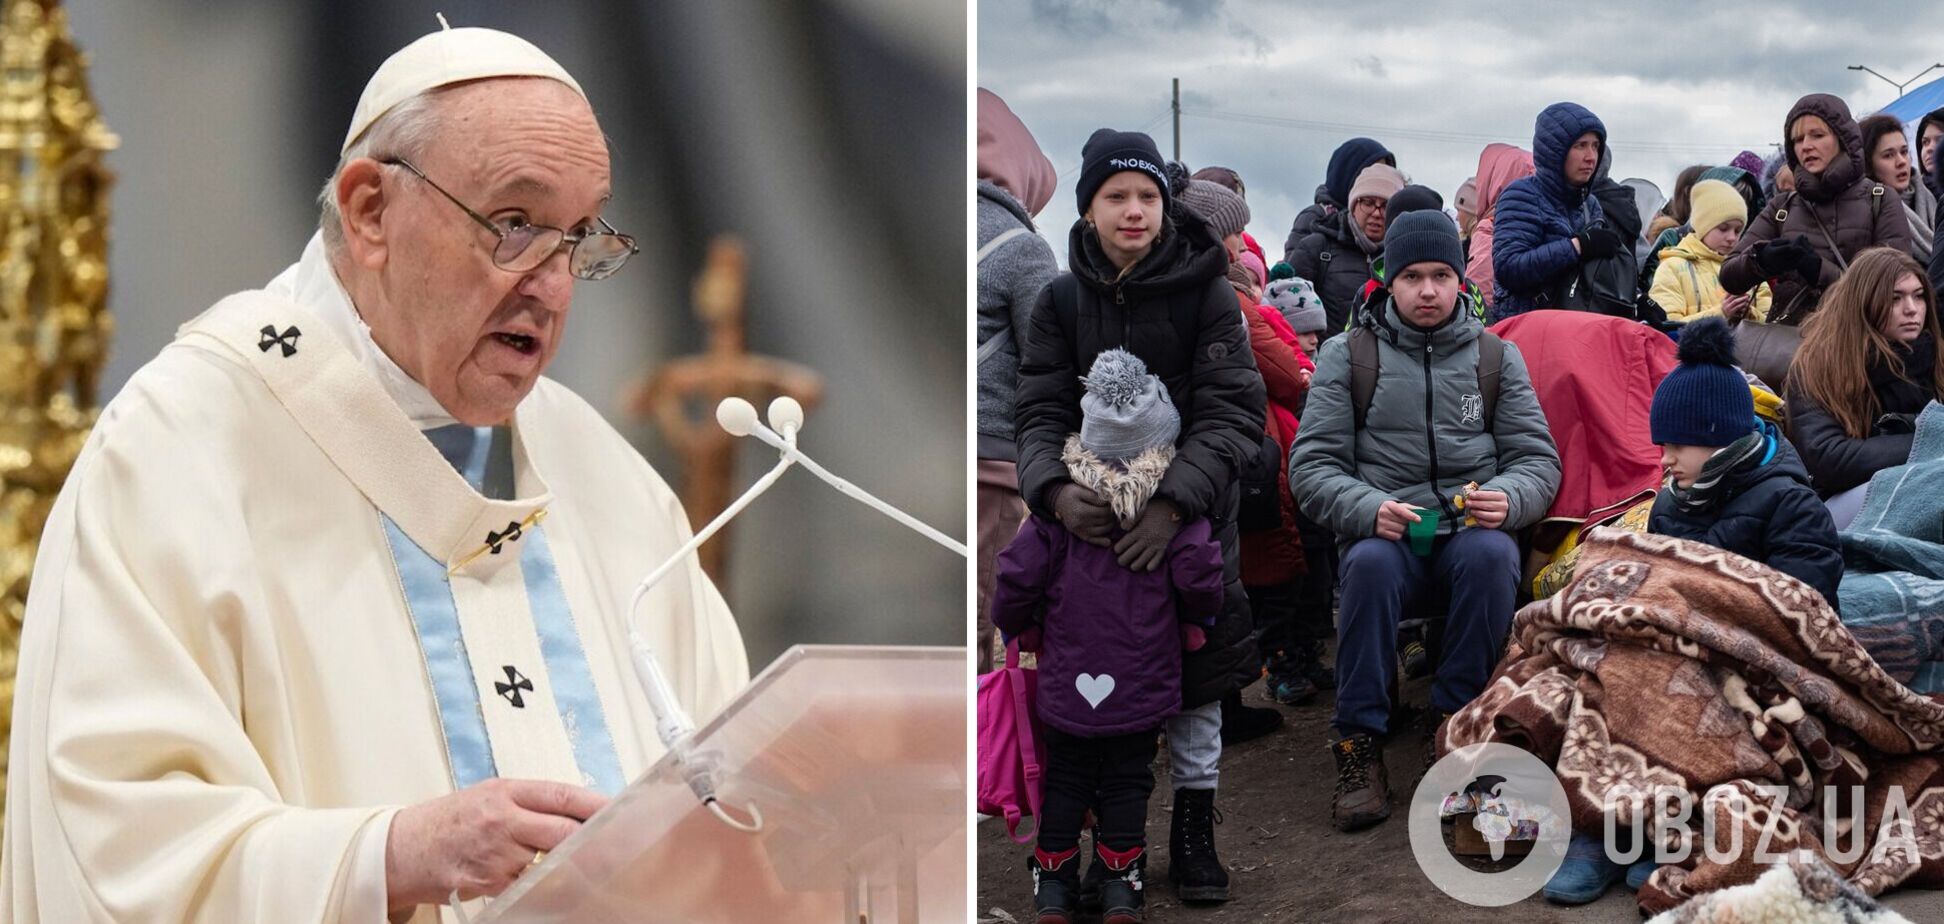 Папа Римский назвал расизмом отношение к украинским беженцам в Европе: принимают лучше других